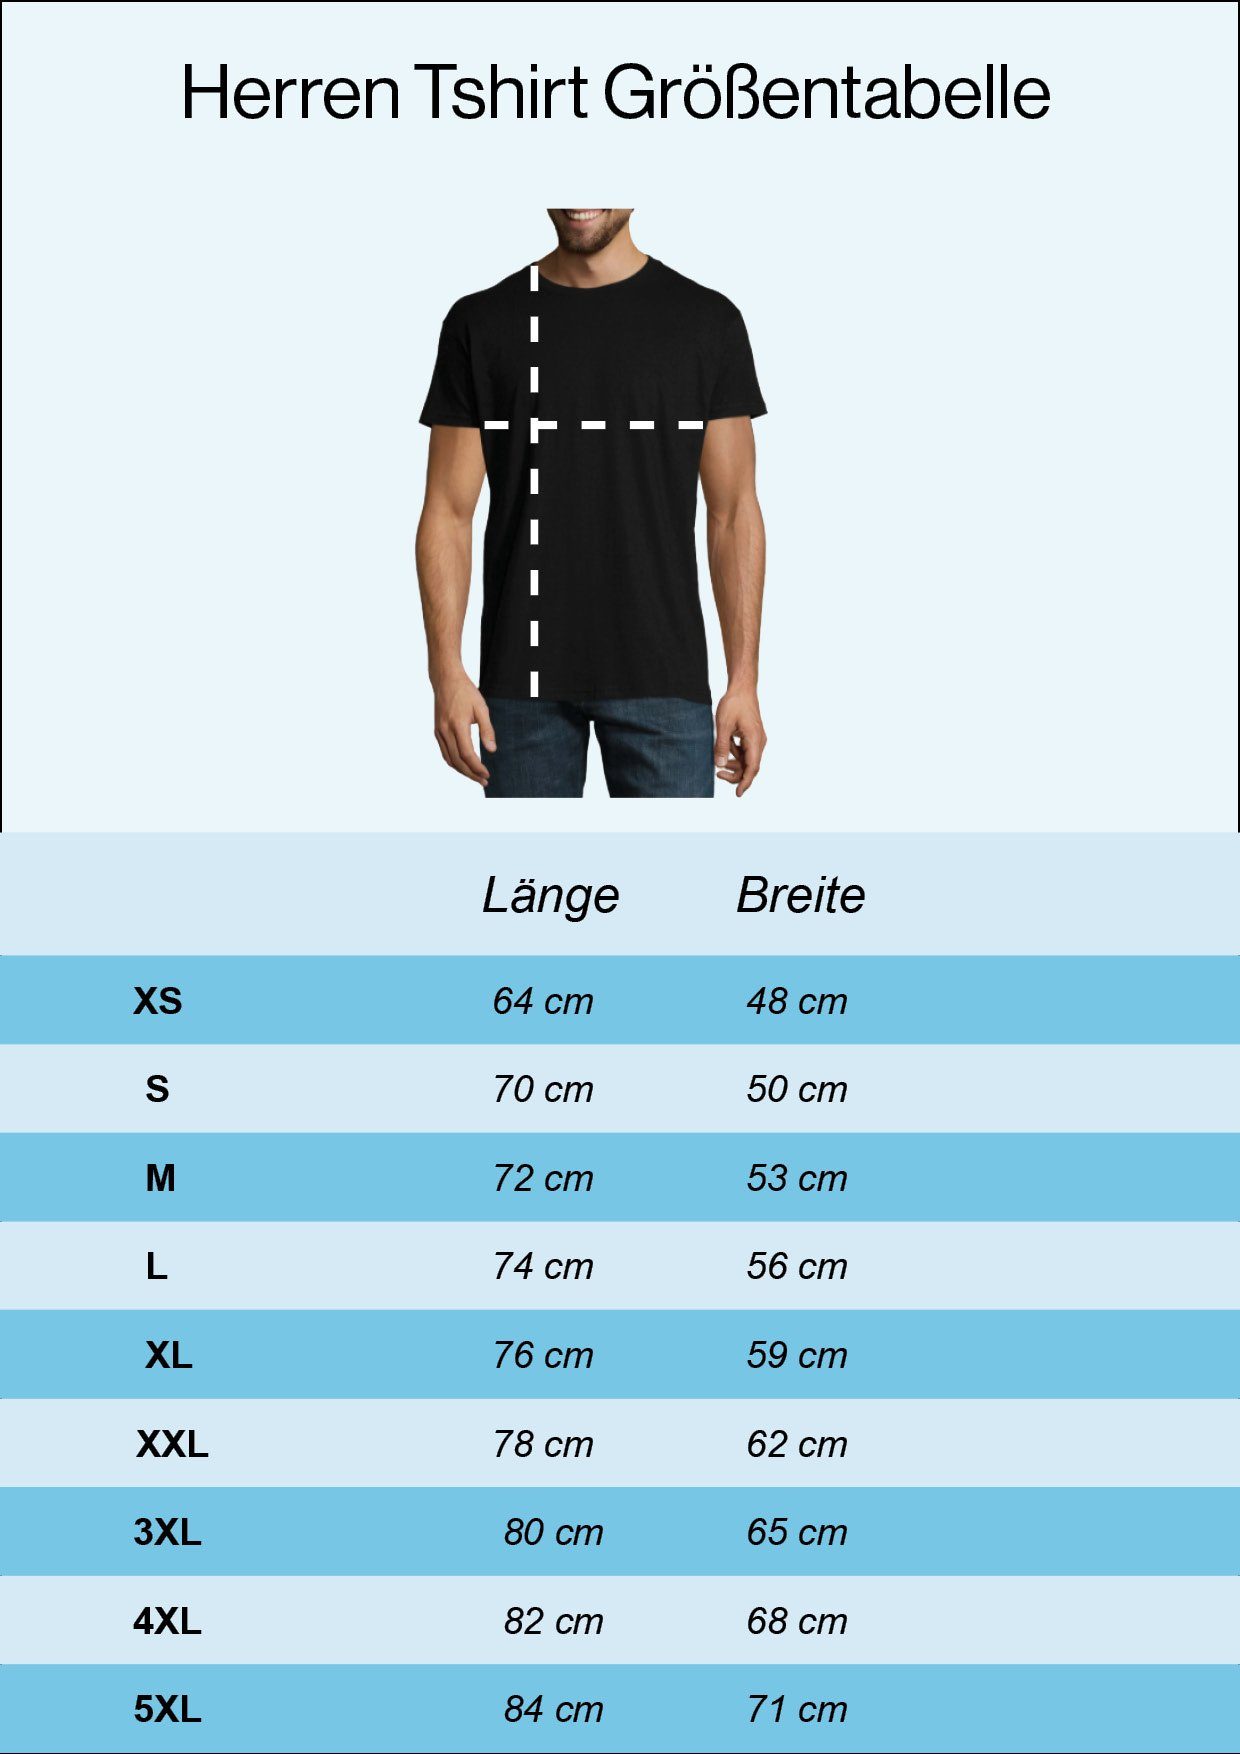 mit Grau Herren Frontdruck Understand What T-Shirt Shirt Zauberwürfel Designz don't you Part Youth Trendigem